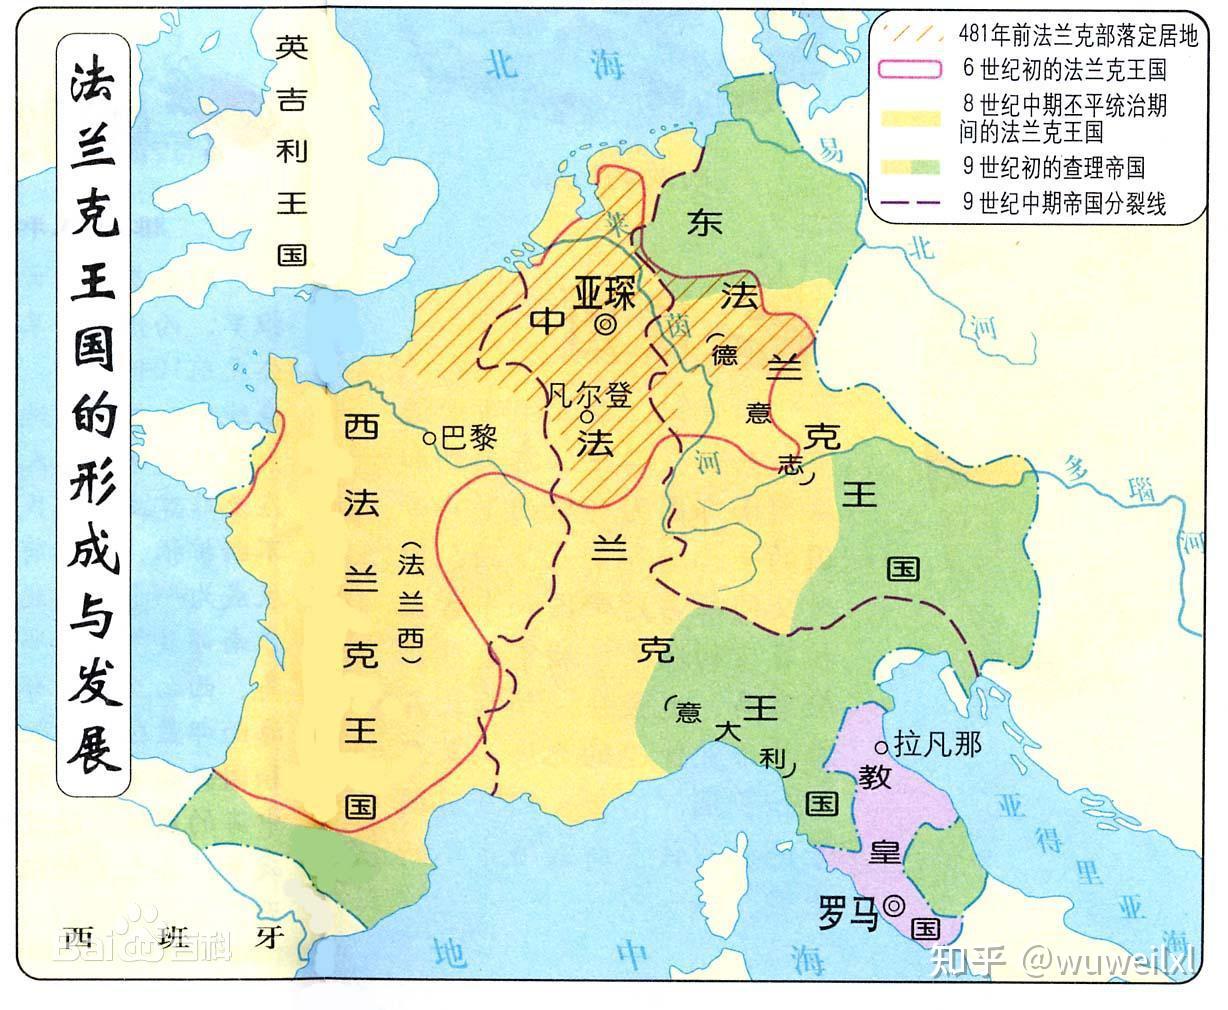 法国地图高清中文版_世界地图_微信公众号文章